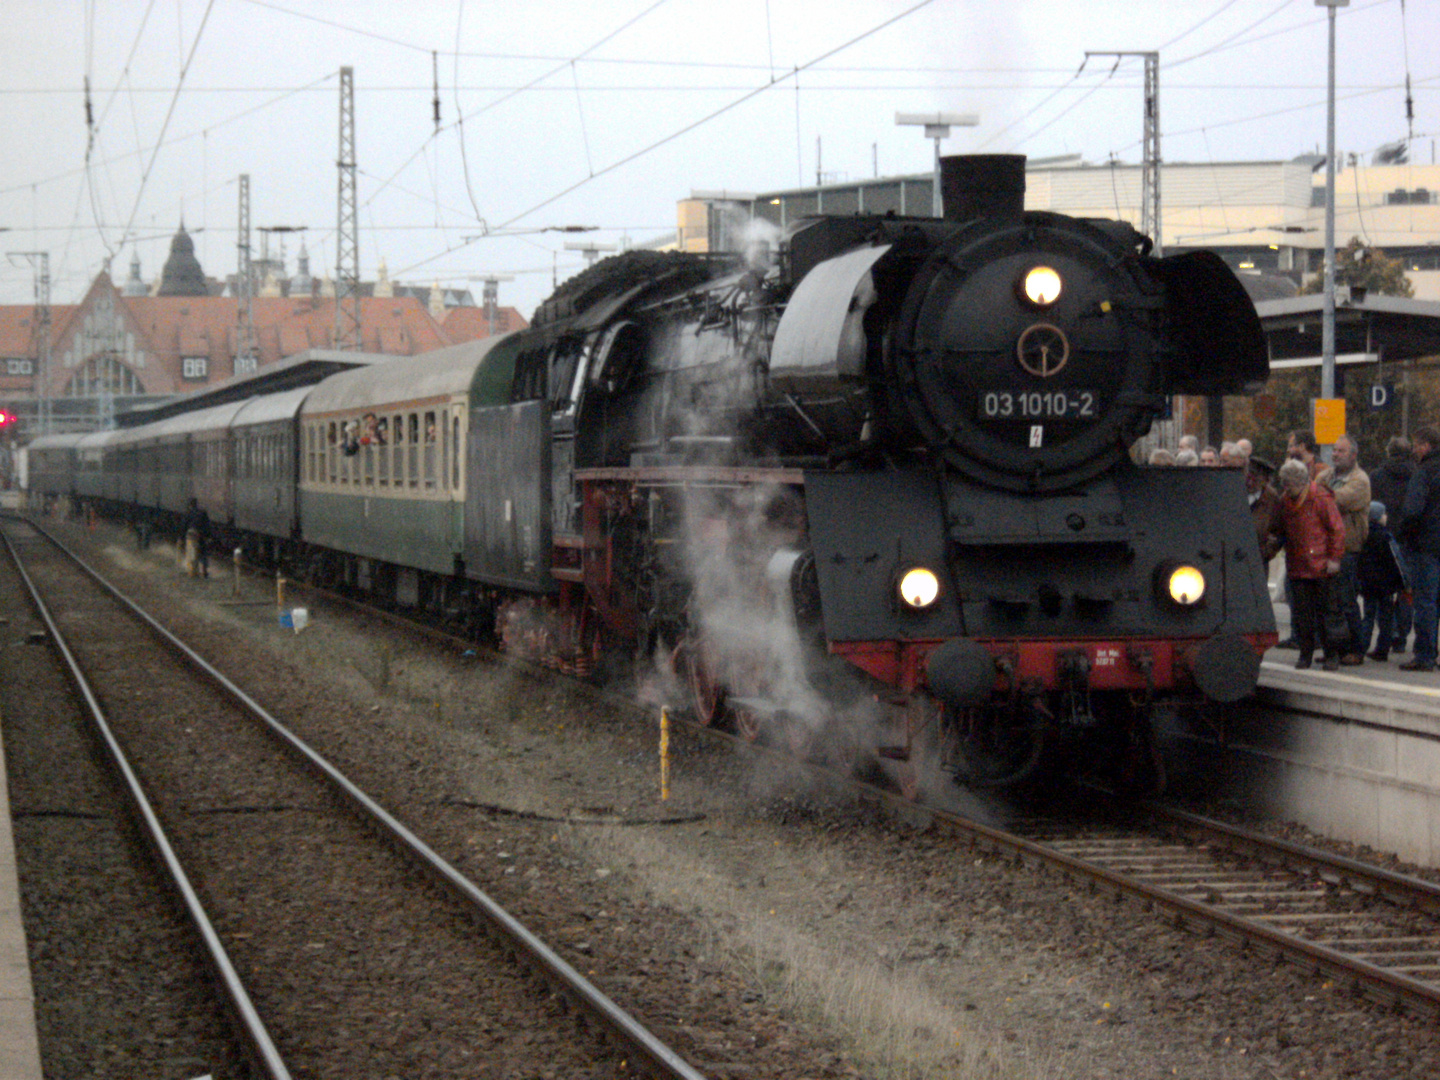 03 1010 im Bahnhof Stralsund Hbf